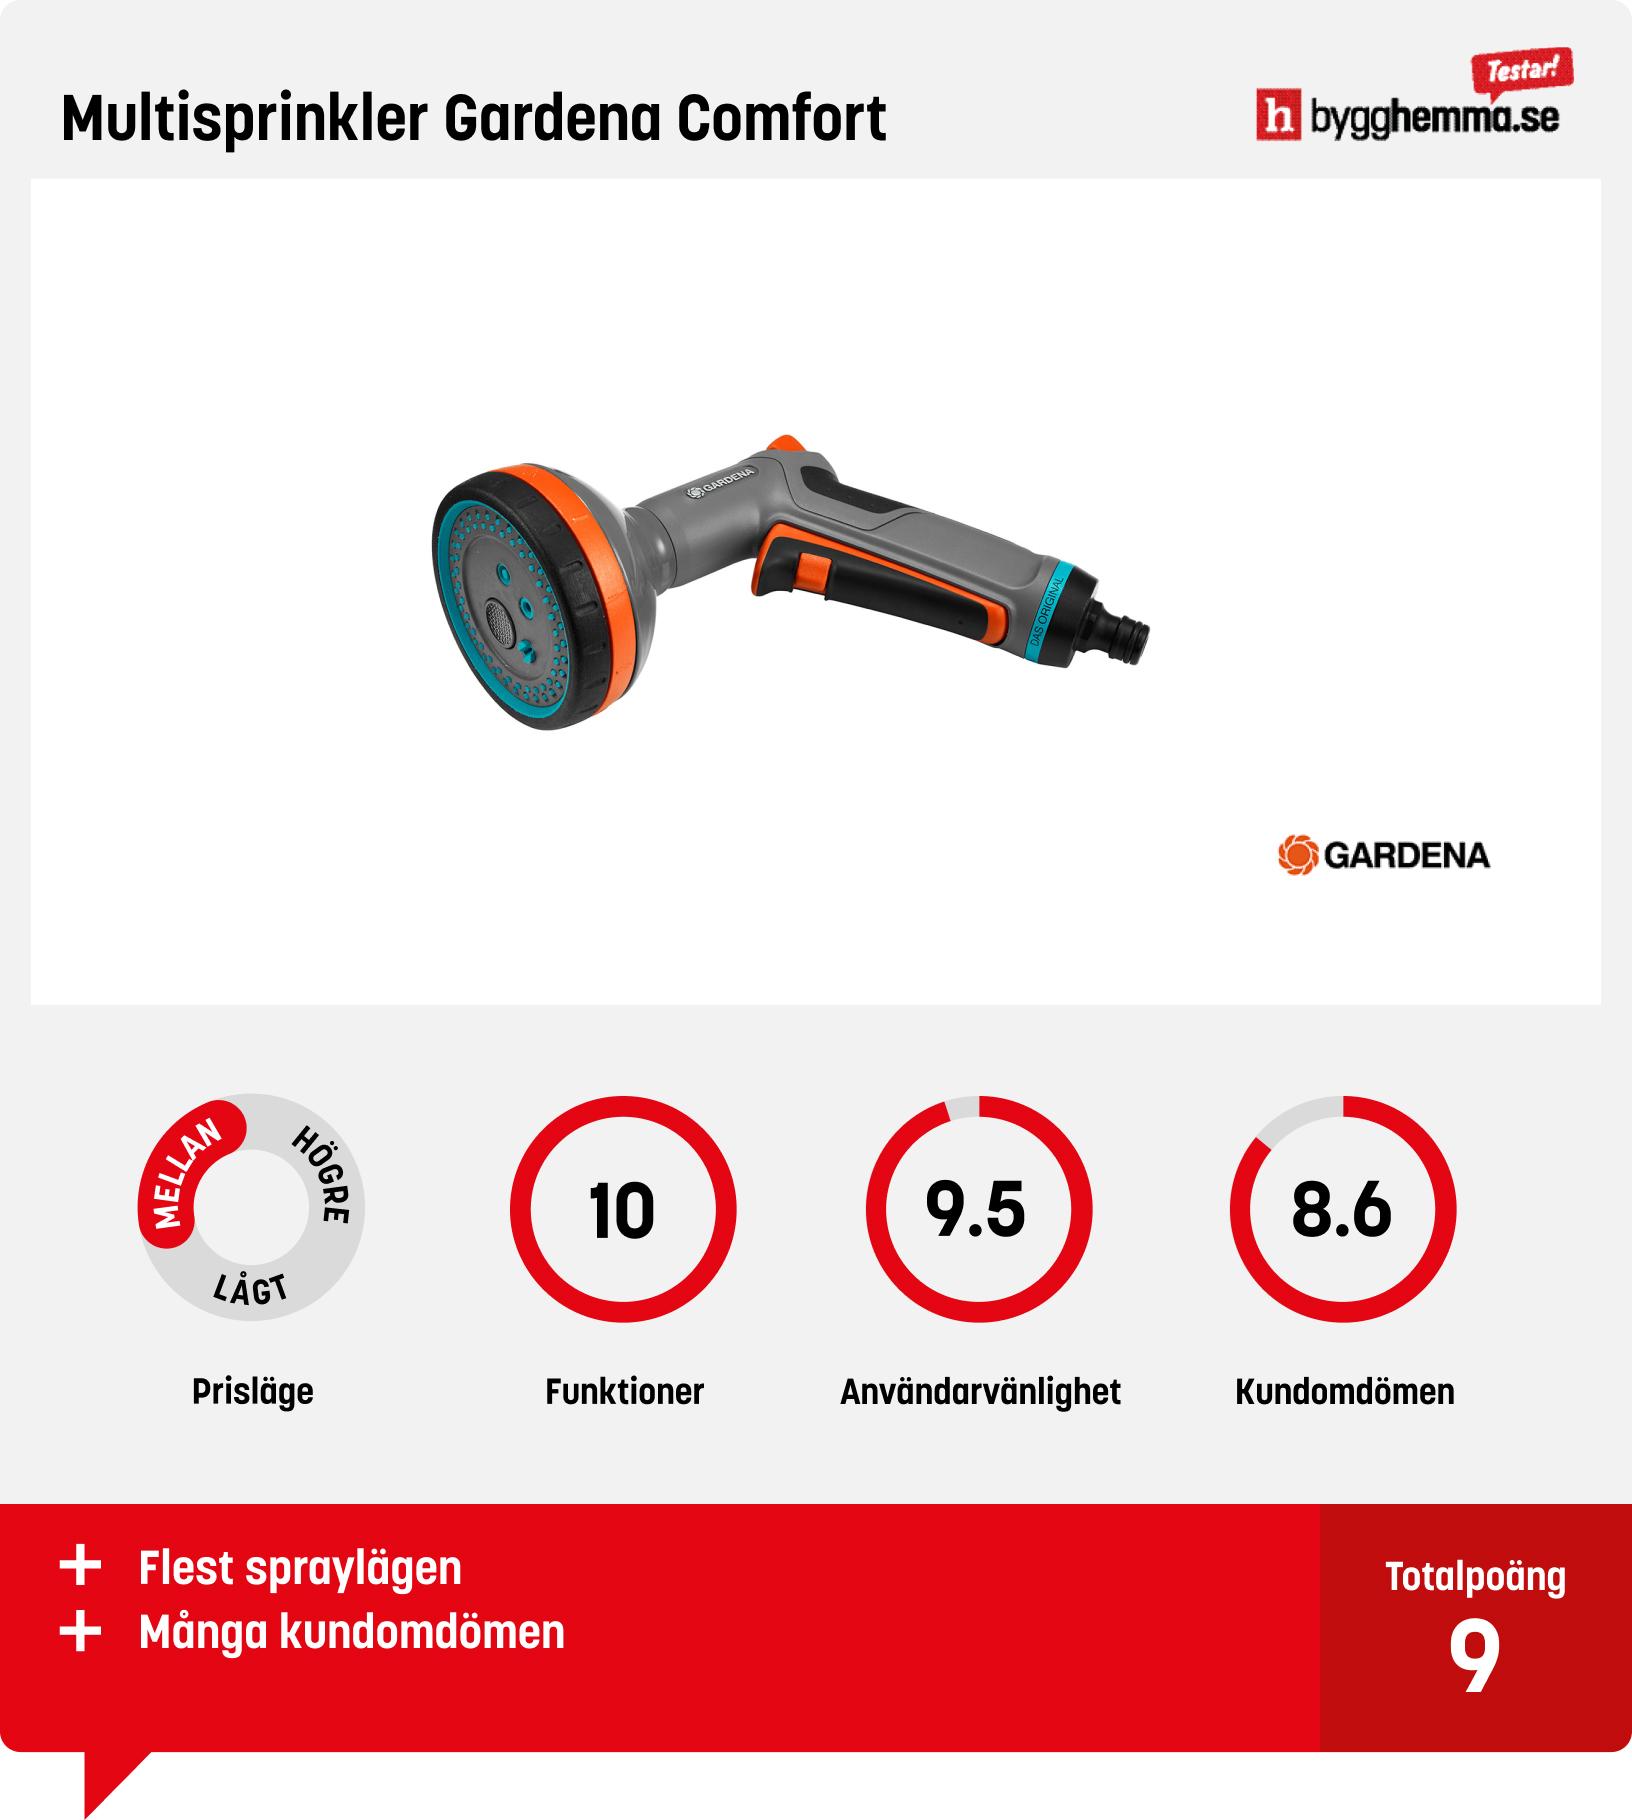 Sprinklerpistol bäst i test - Multisprinkler Gardena Comfort